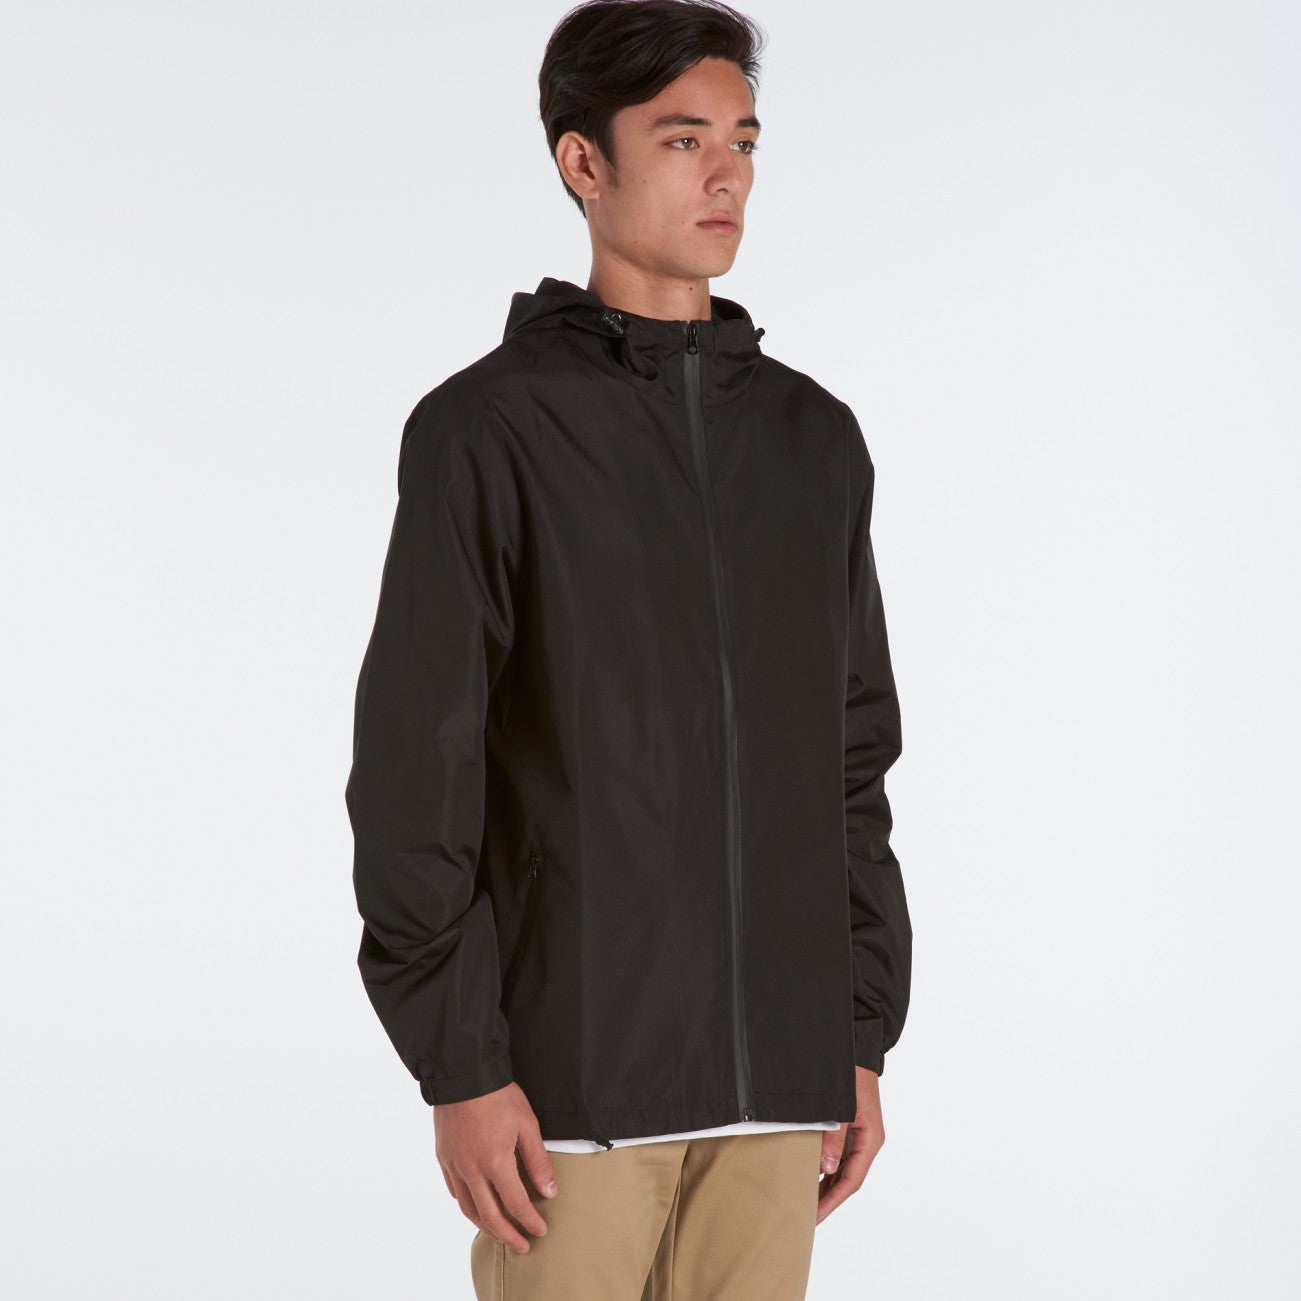 Men's black zip jacket, blank or screenprinted, in quantities of 5, 10 ...